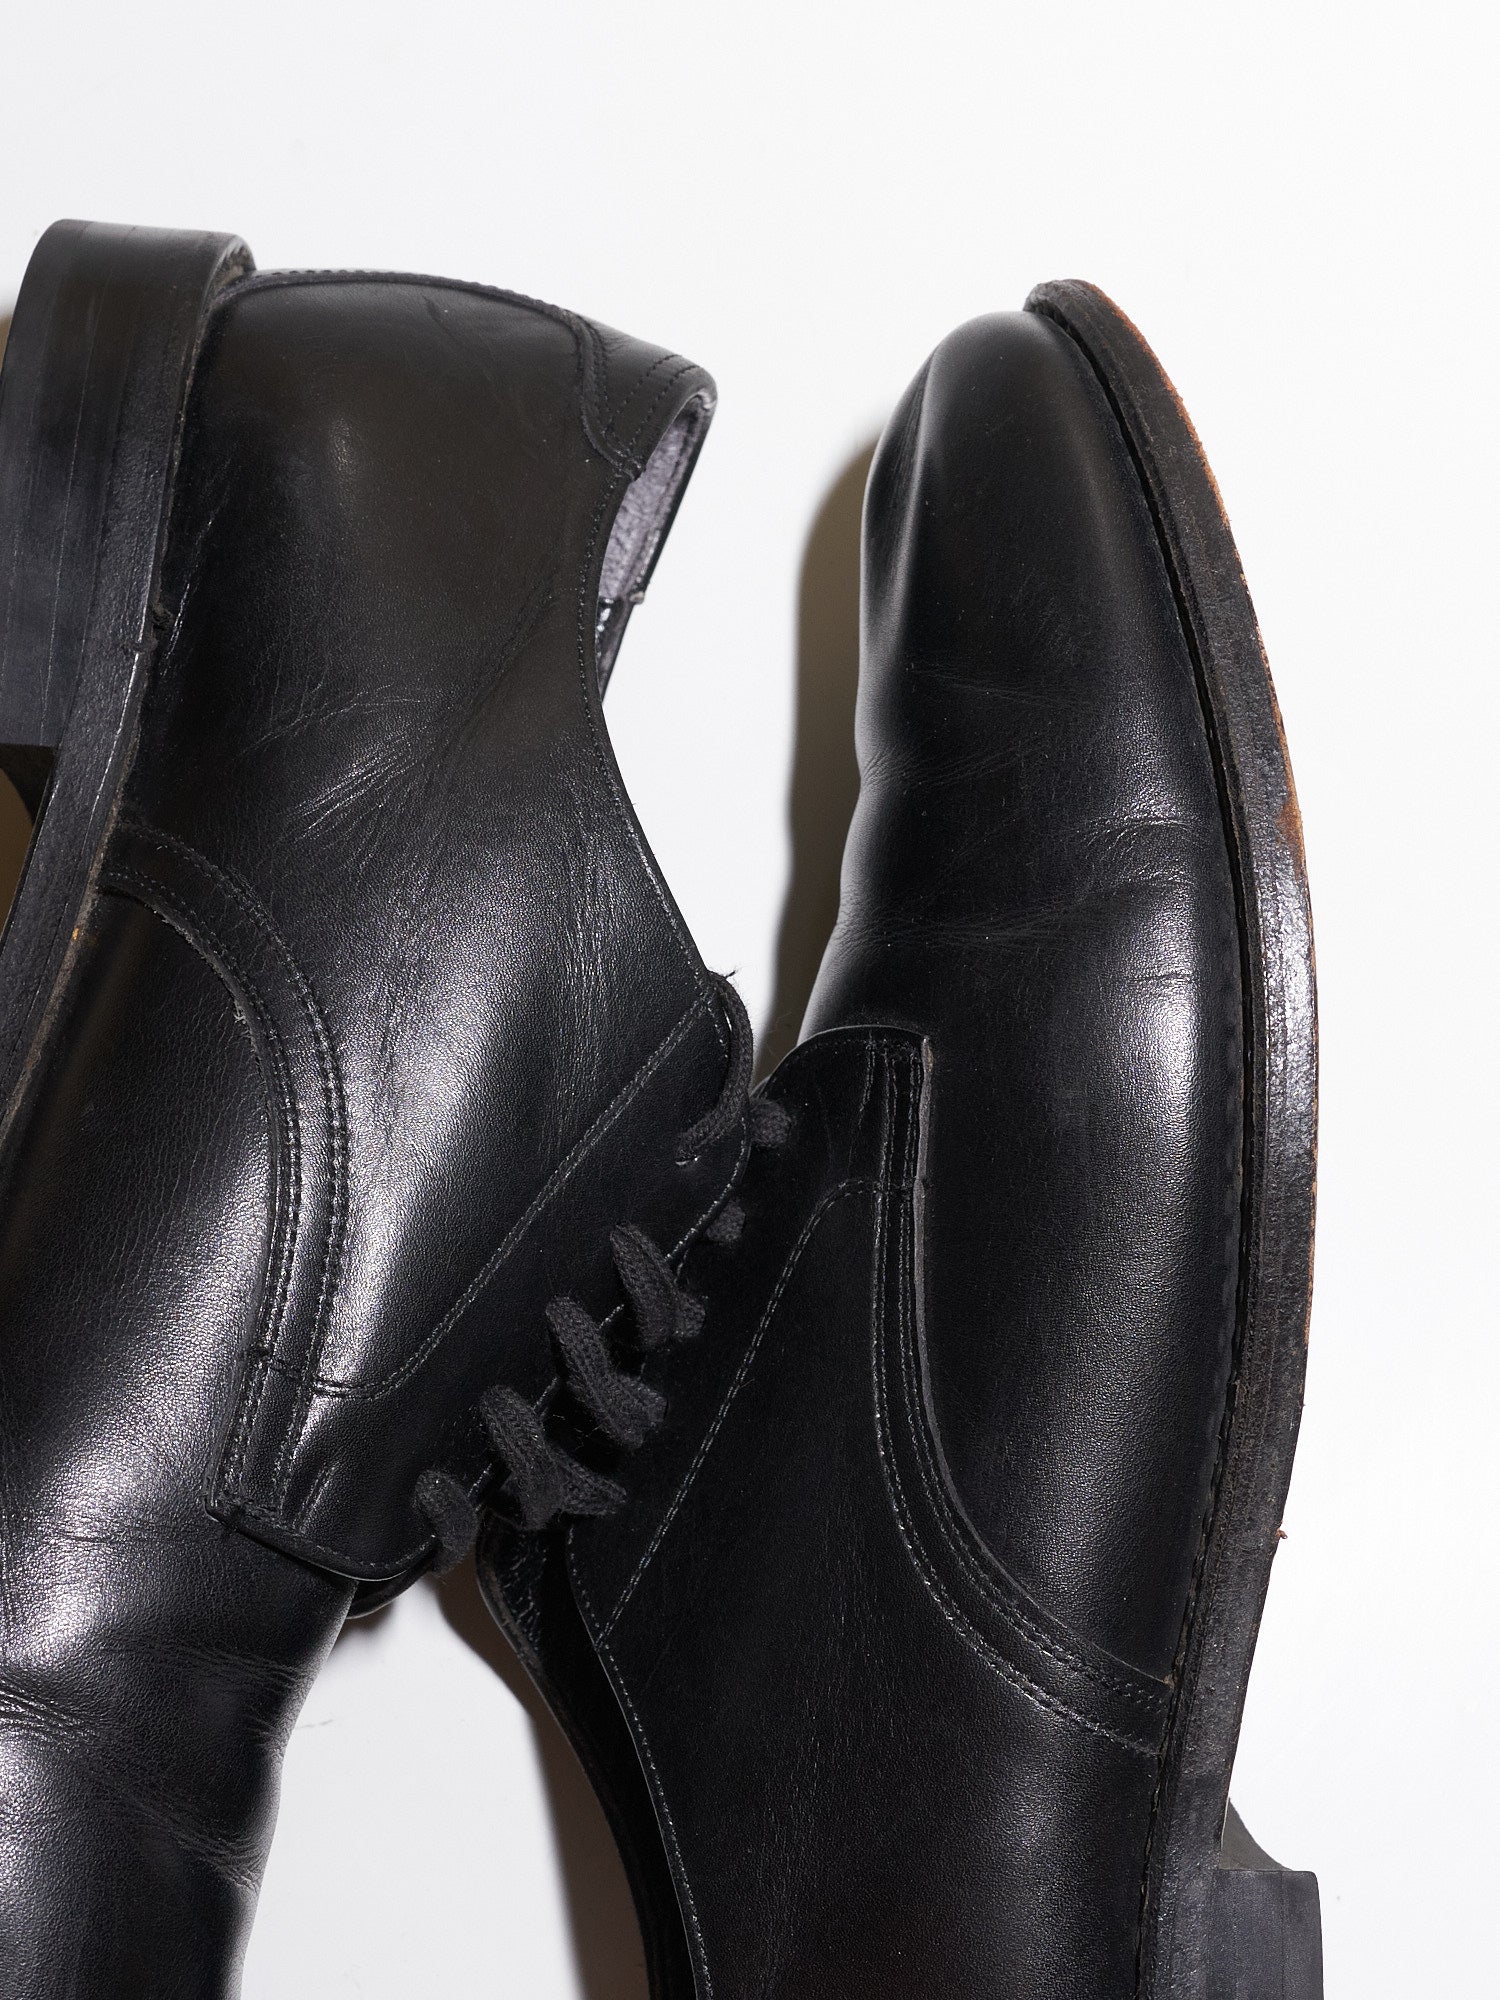 Robe de Chambre Comme des Garcons black leather derby shoes - sz 22.5 / 35.5